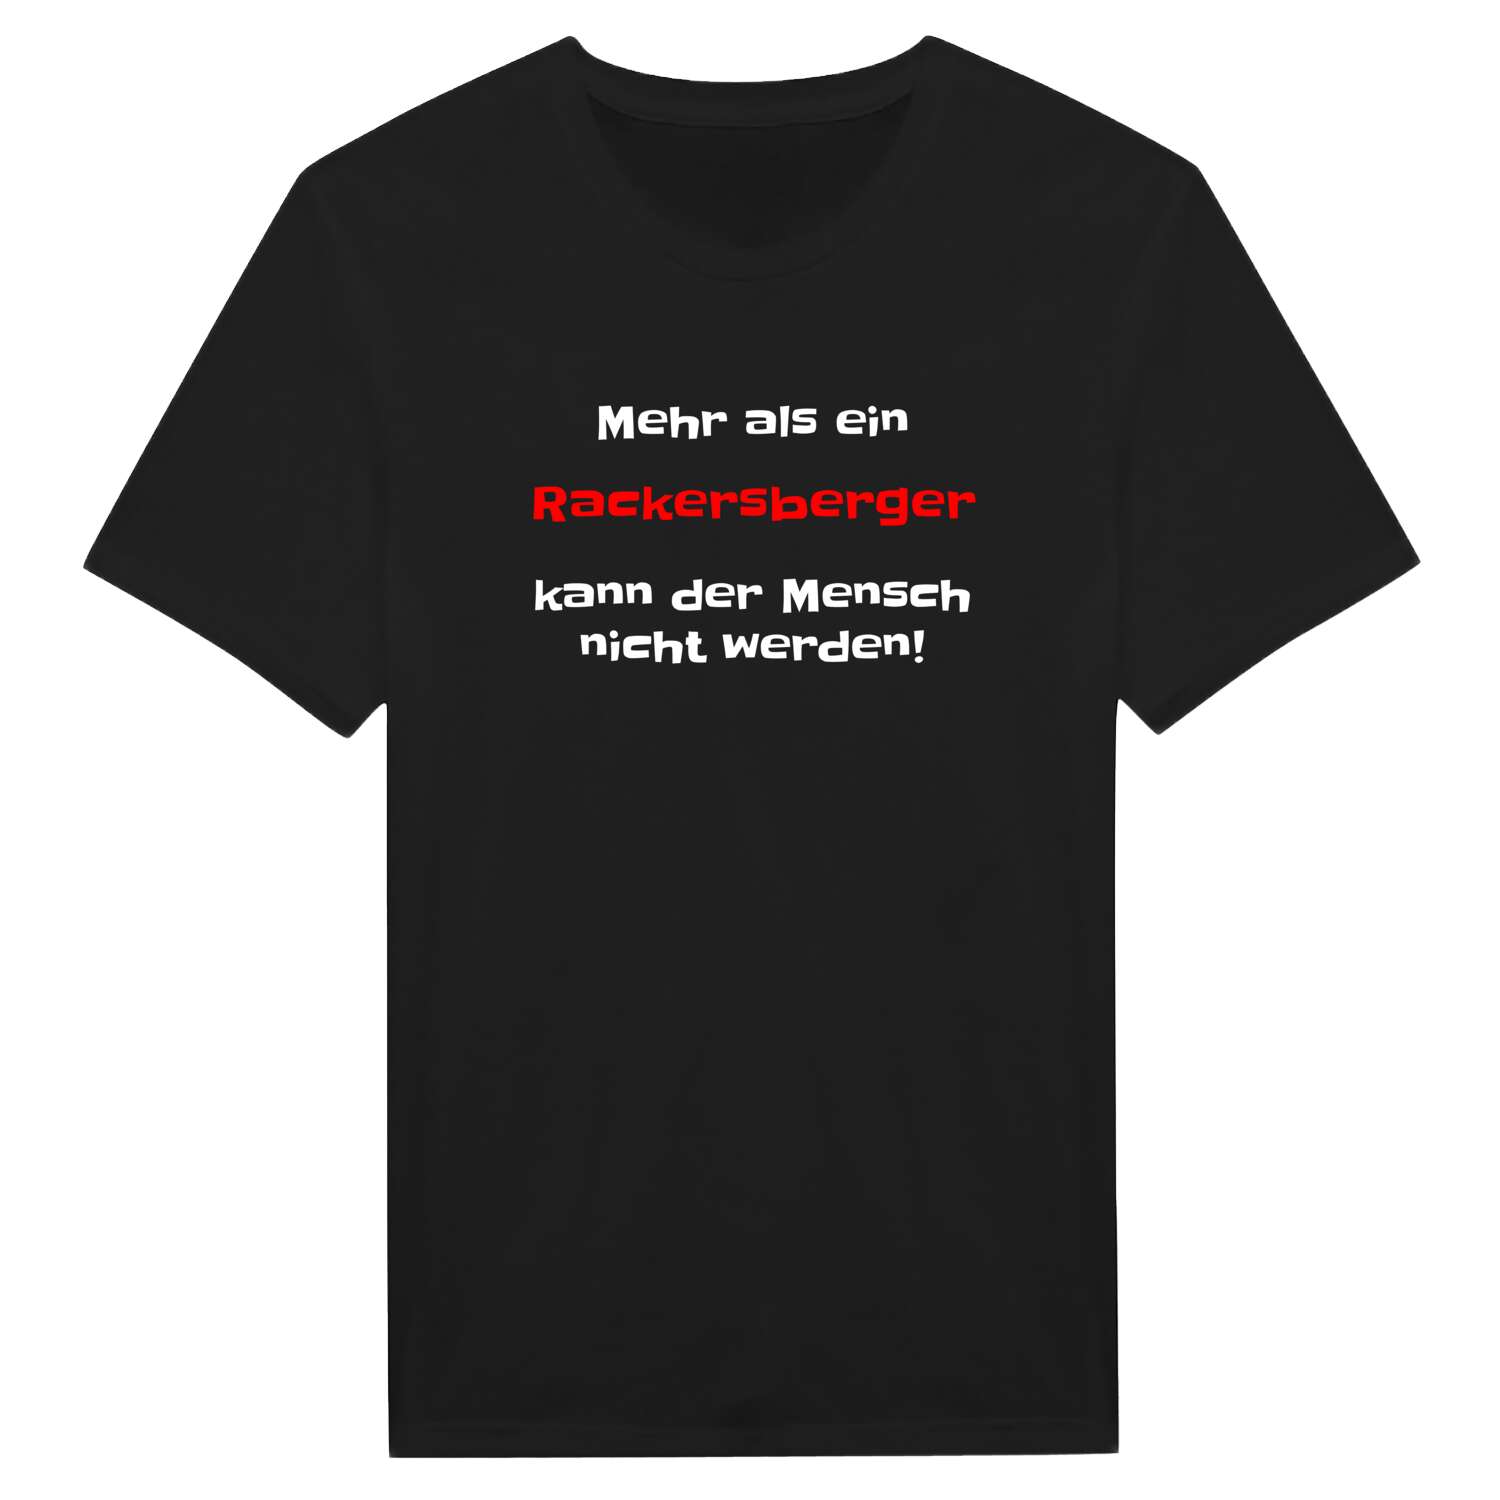 Rackersberg T-Shirt »Mehr als ein«